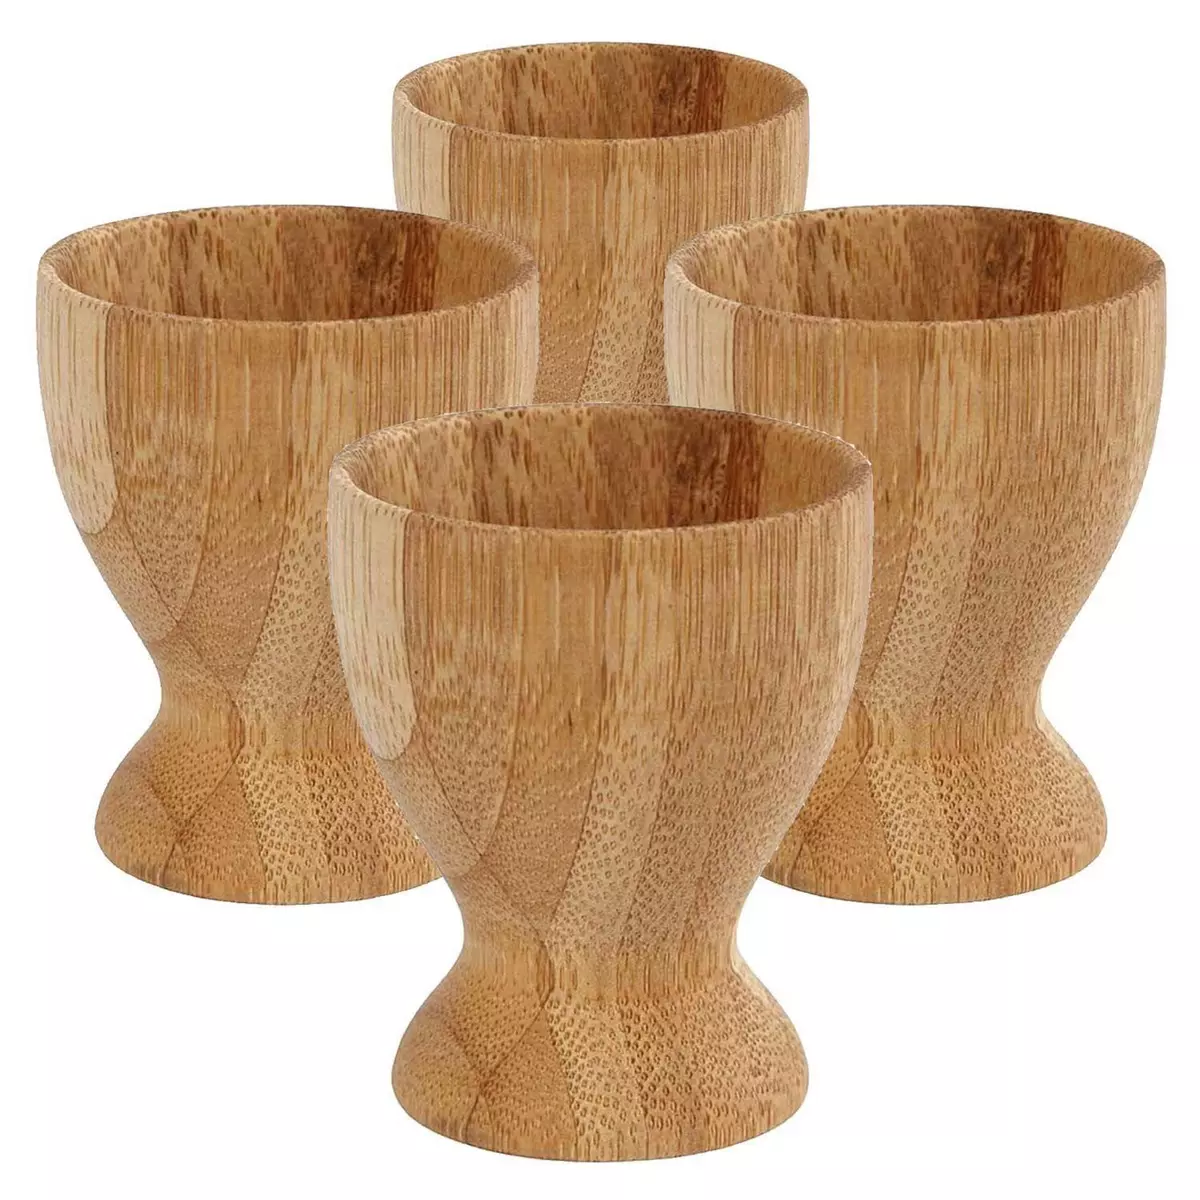  4 coquetiers en bambou à customiser 6 x Ø 4,8 cm